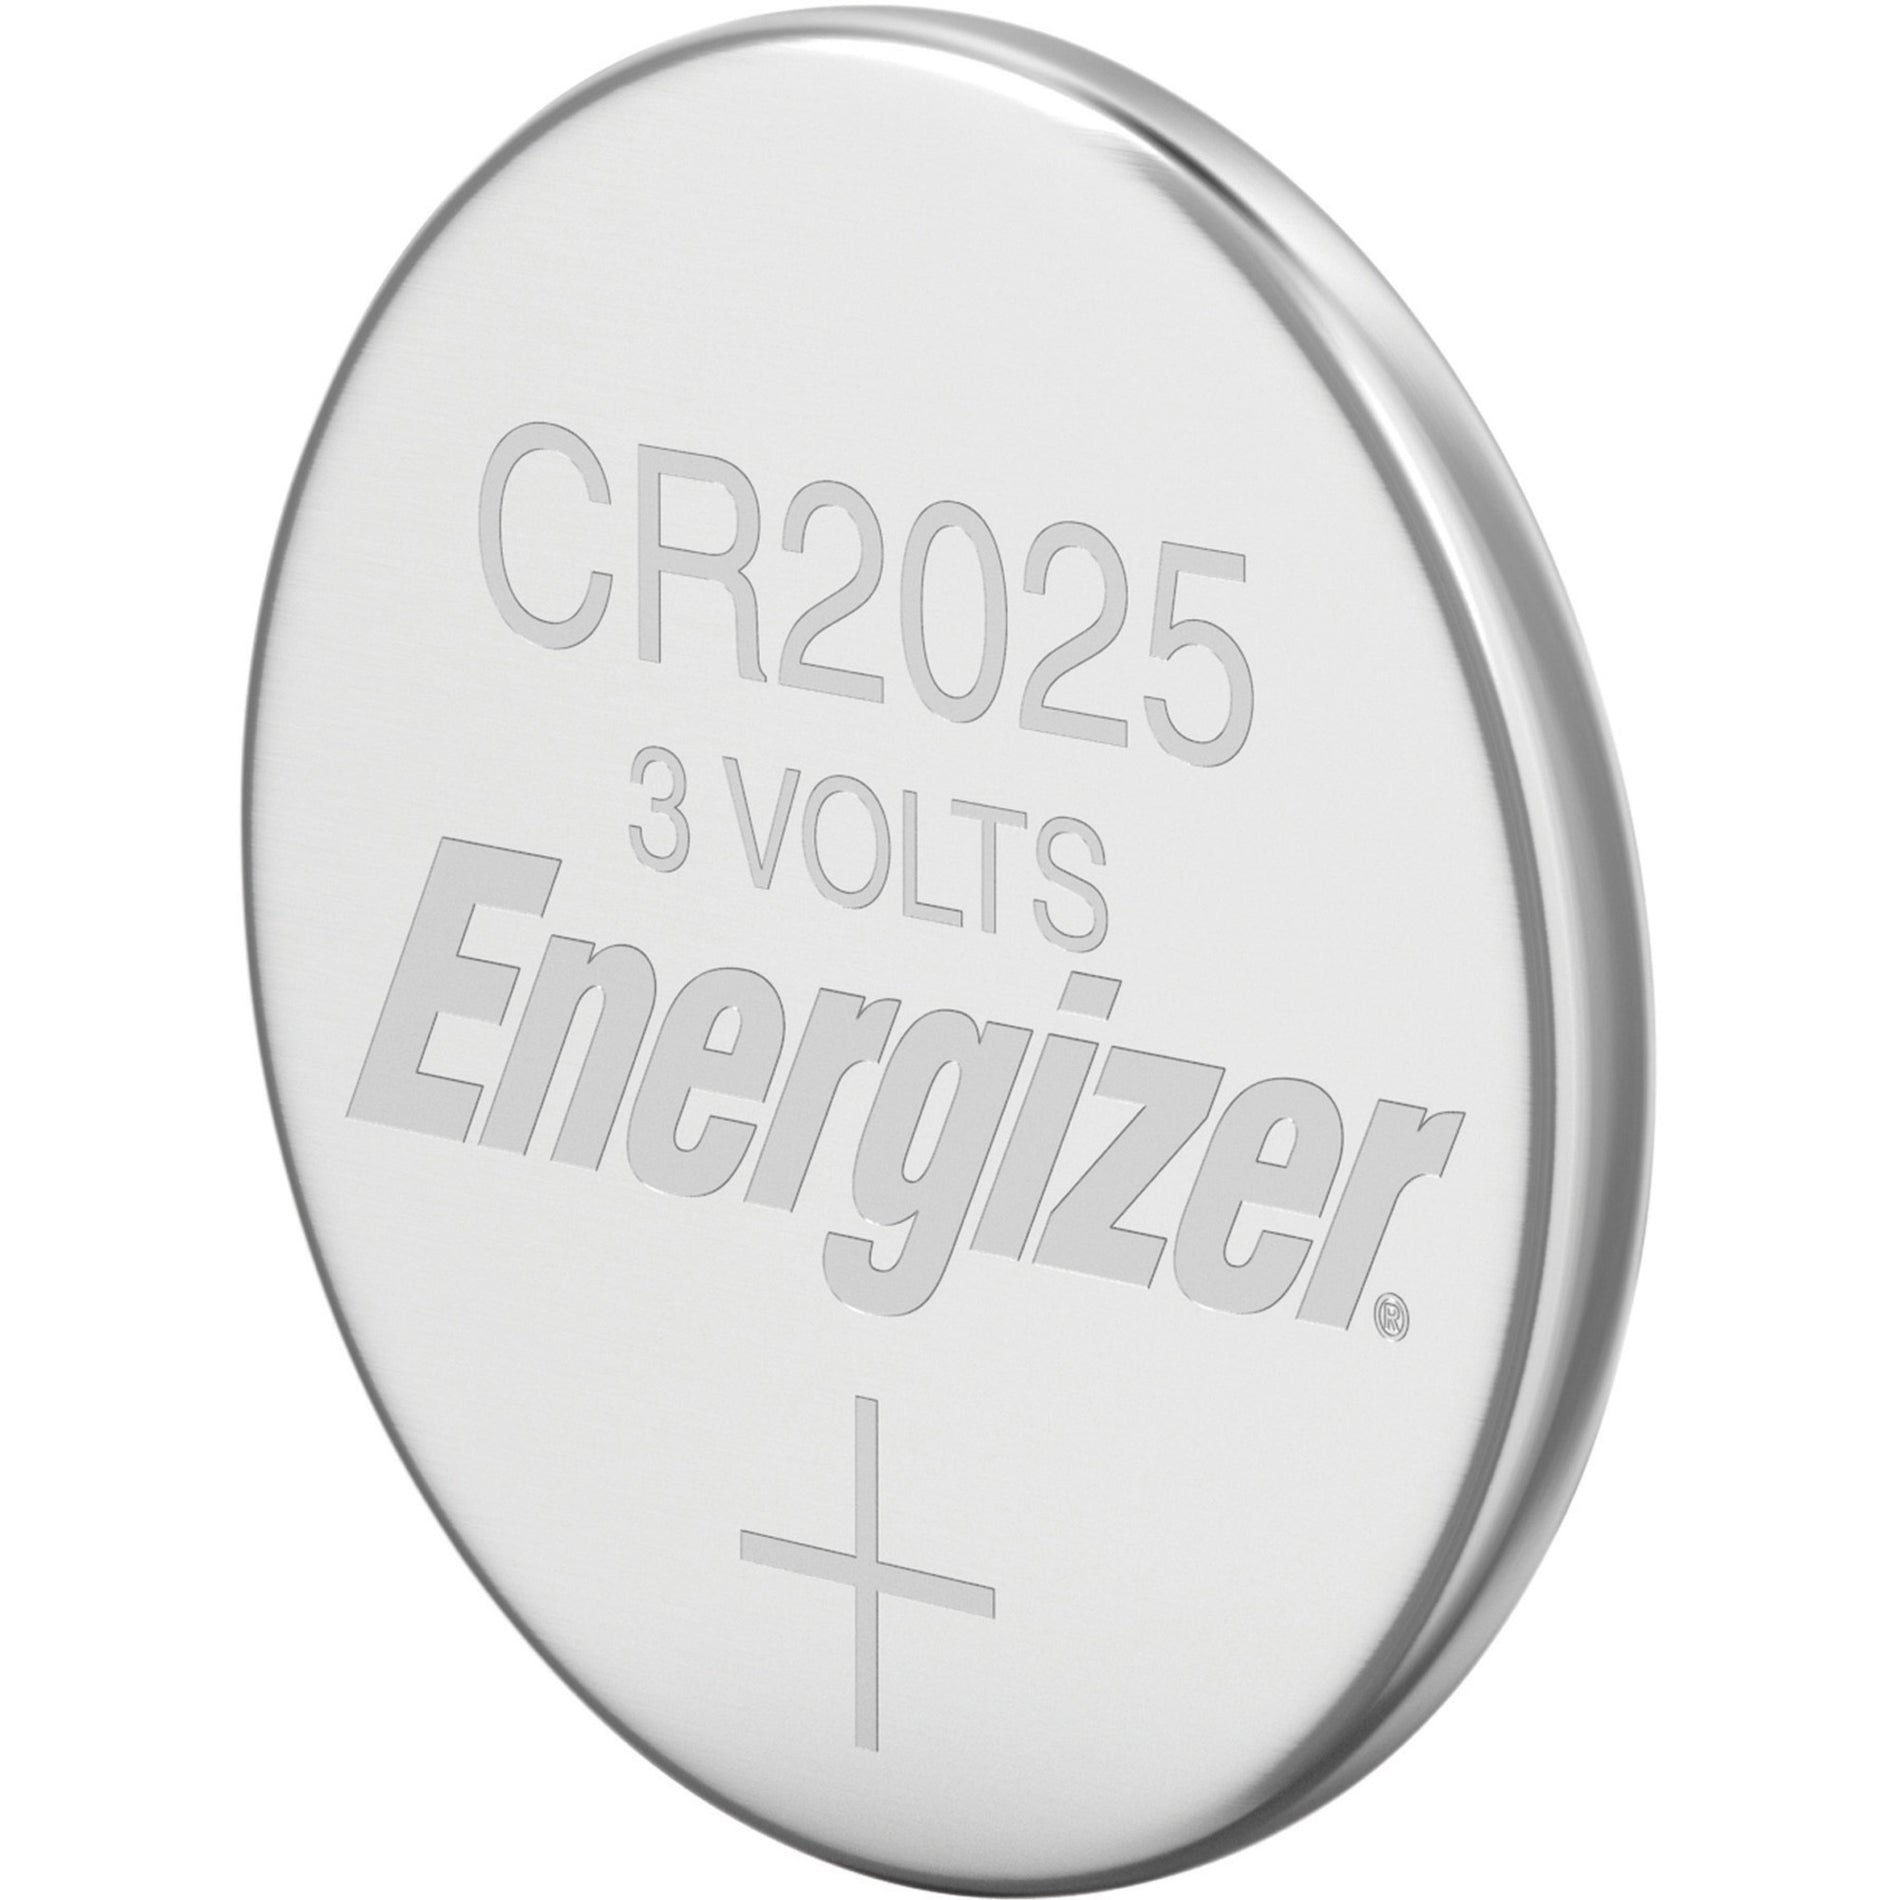 Energizer 2025BP2 2025 Lithium Coin Batteries, 2 Pack - Multipurpose 3V Battery